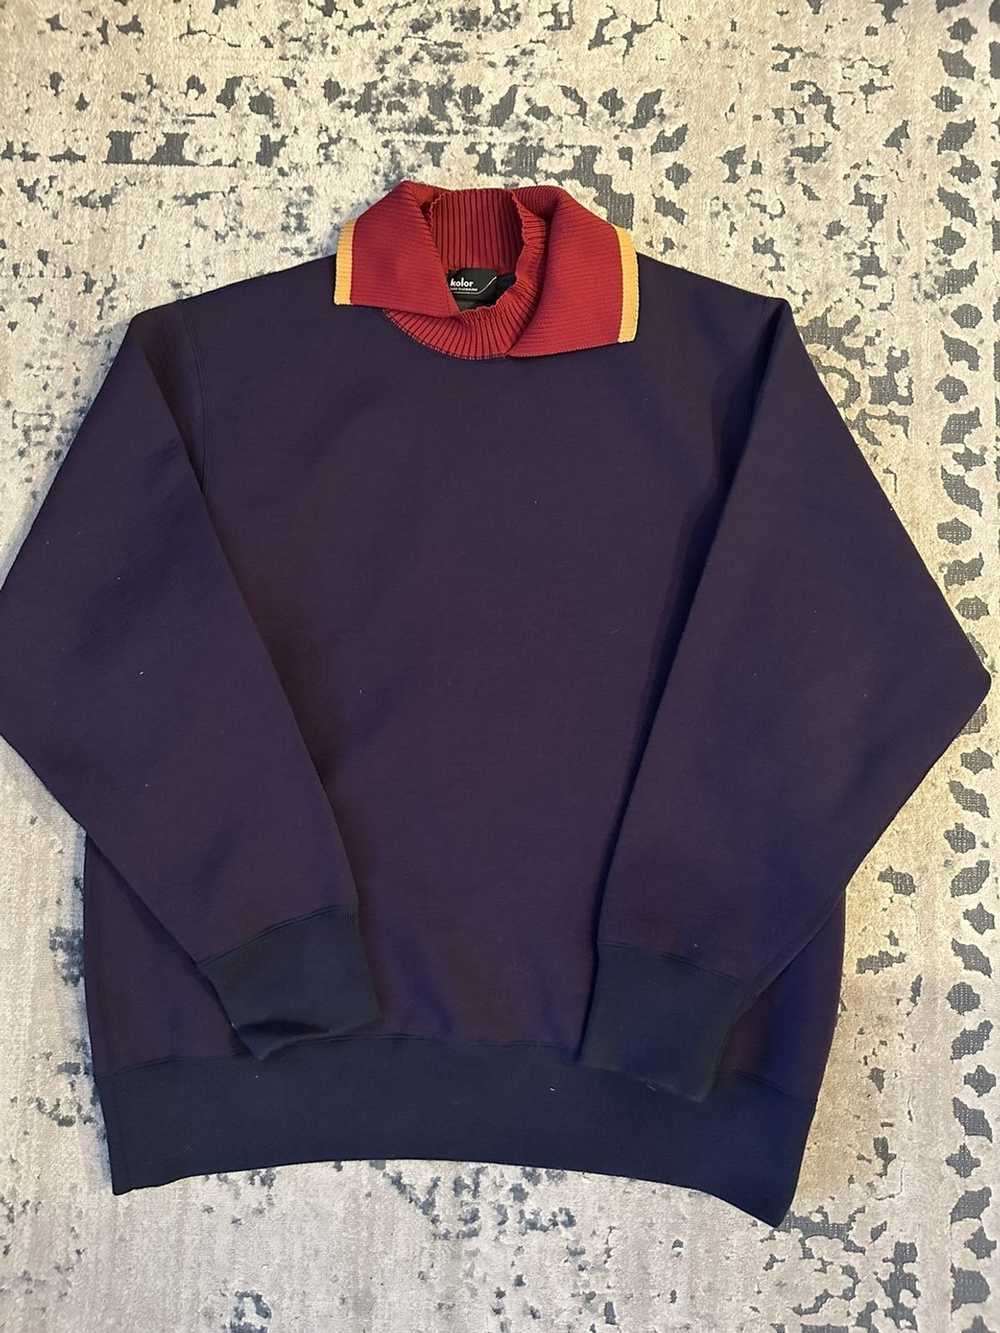 Kolor Kolor Roll Neck Sweater - image 2